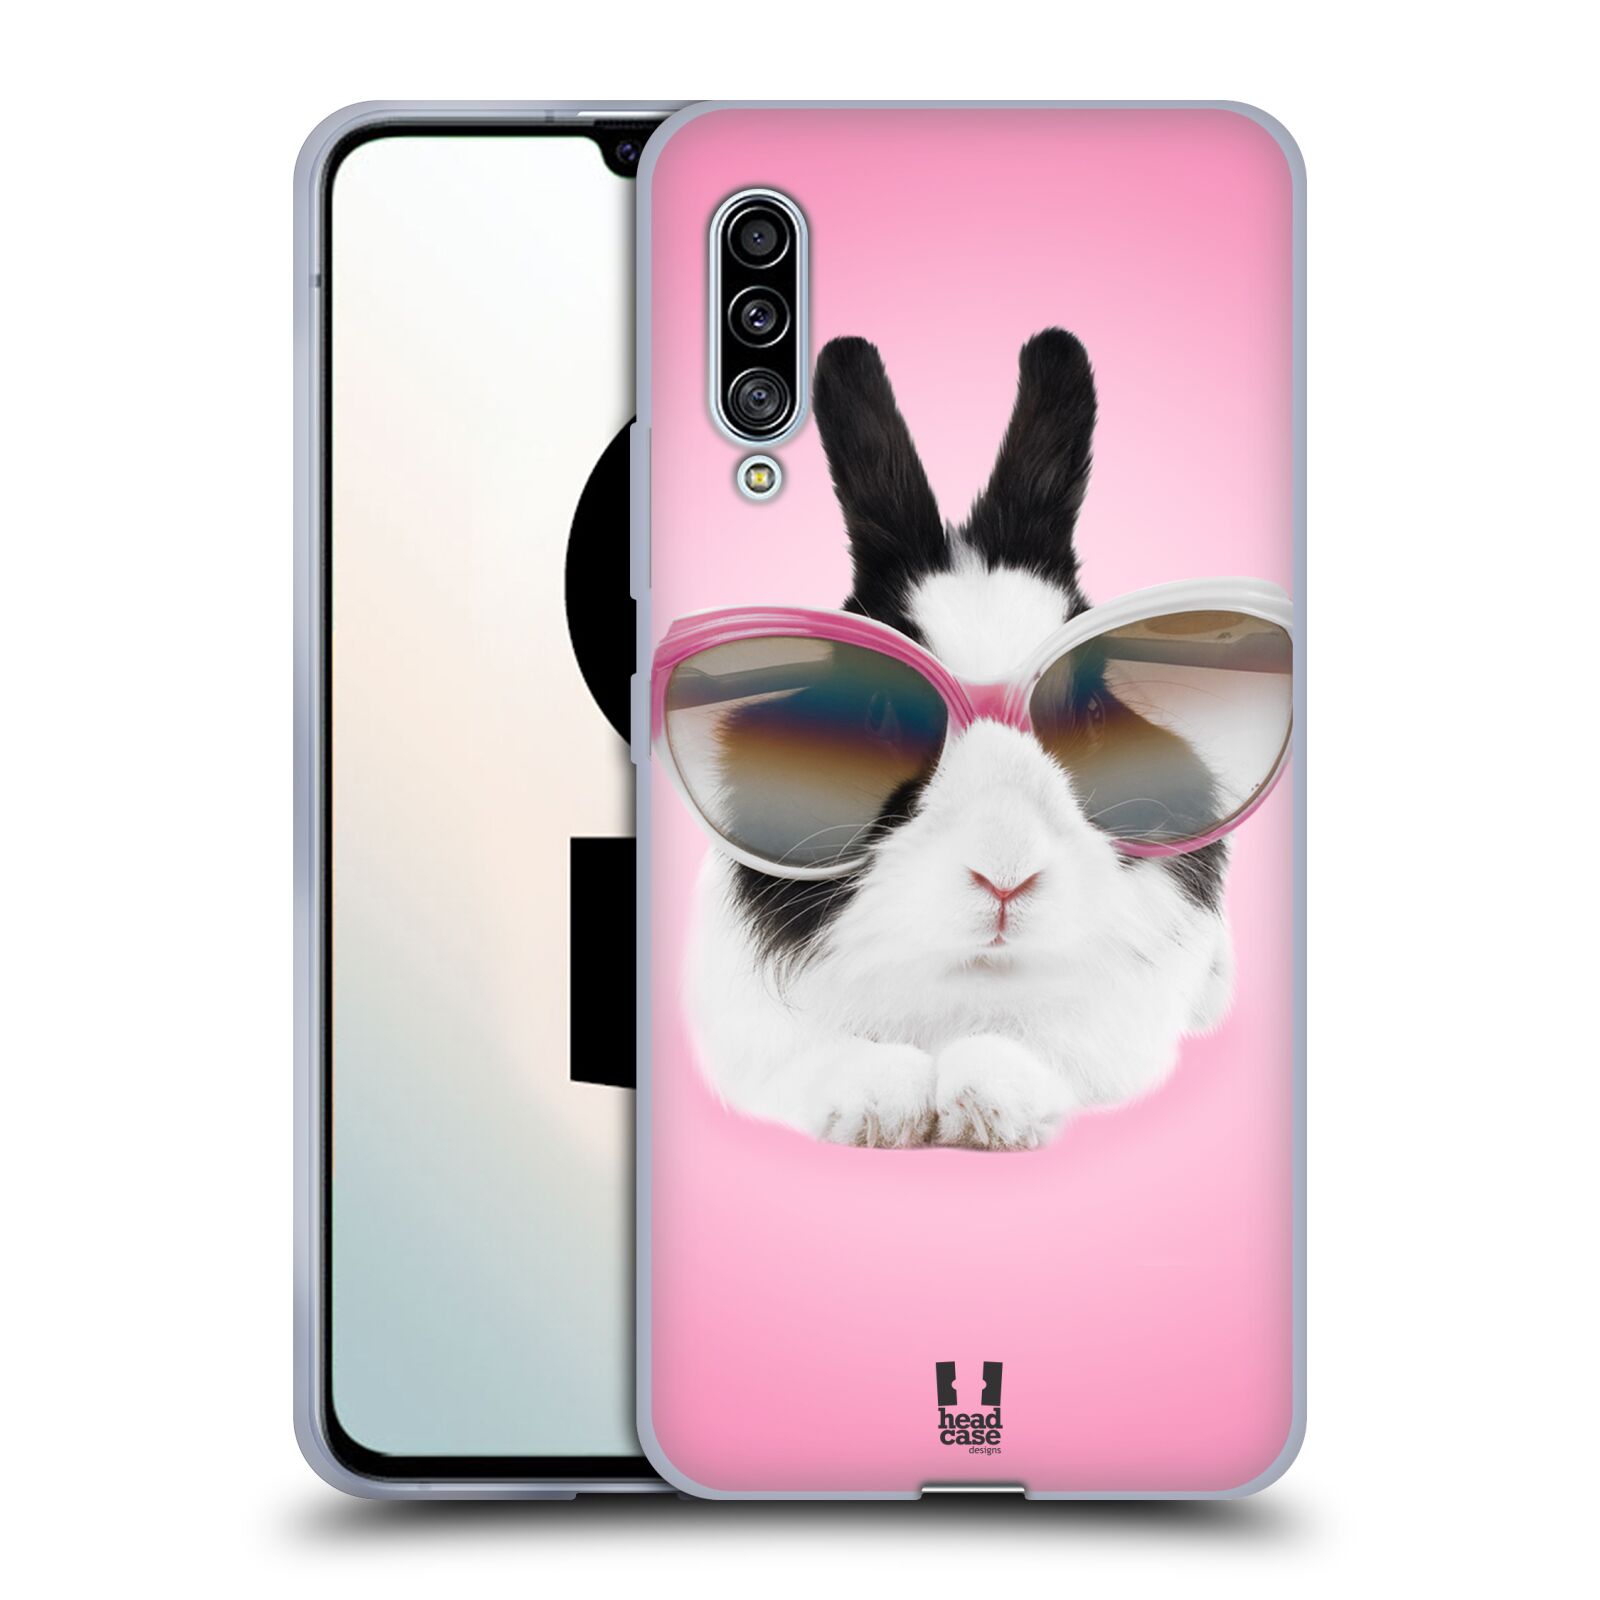 Plastový obal HEAD CASE na mobil Samsung Galaxy A90 5G vzor Legrační zvířátka roztomilý králíček s brýlemi růžová